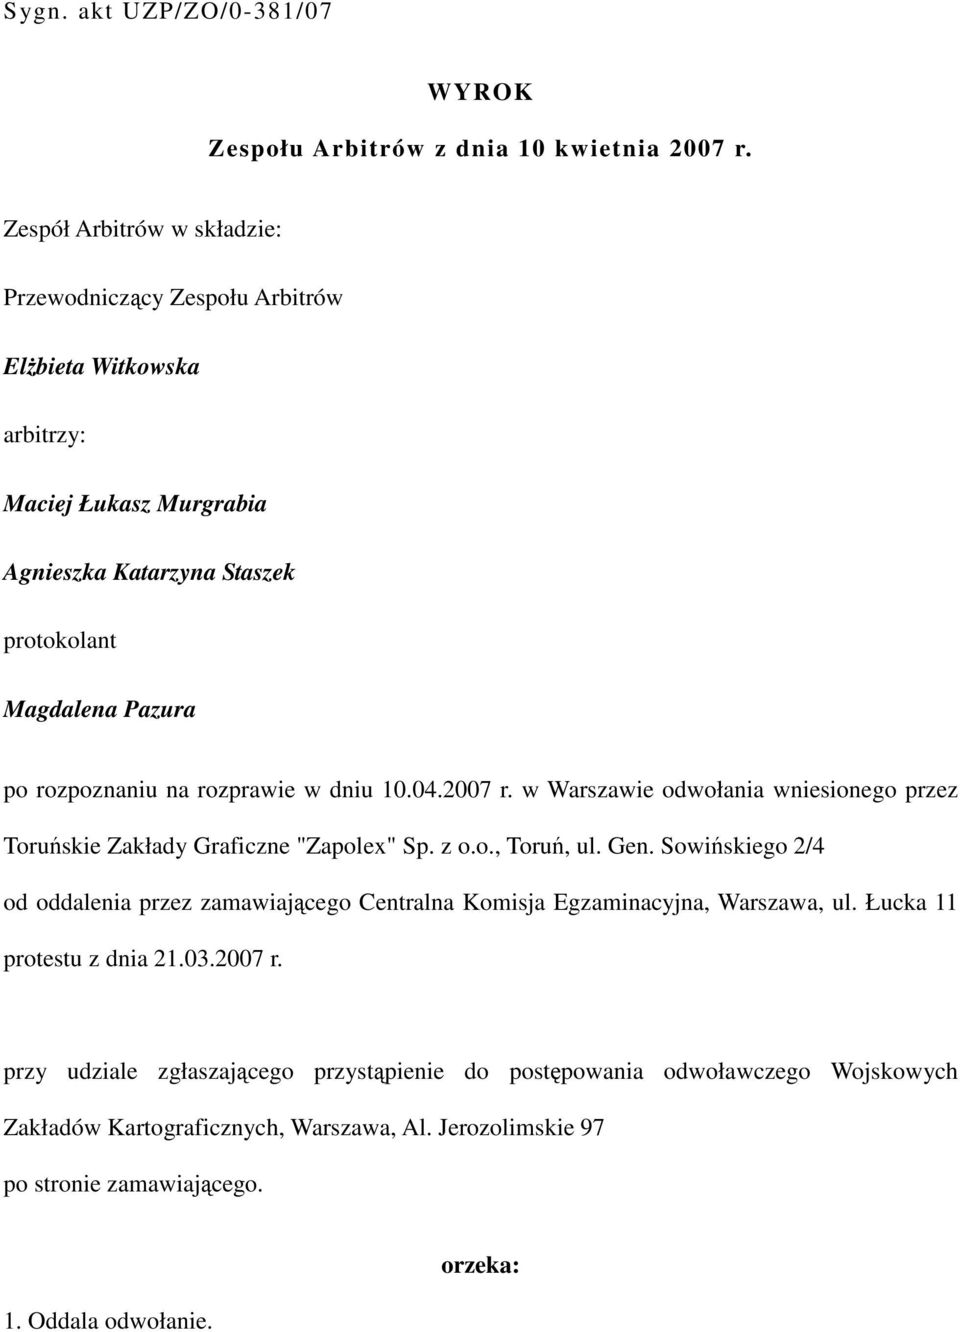 rozpoznaniu na rozprawie w dniu 10.04.2007 r. w Warszawie odwołania wniesionego przez Toruńskie Zakłady Graficzne "Zapolex" Sp. z o.o., Toruń, ul. Gen.